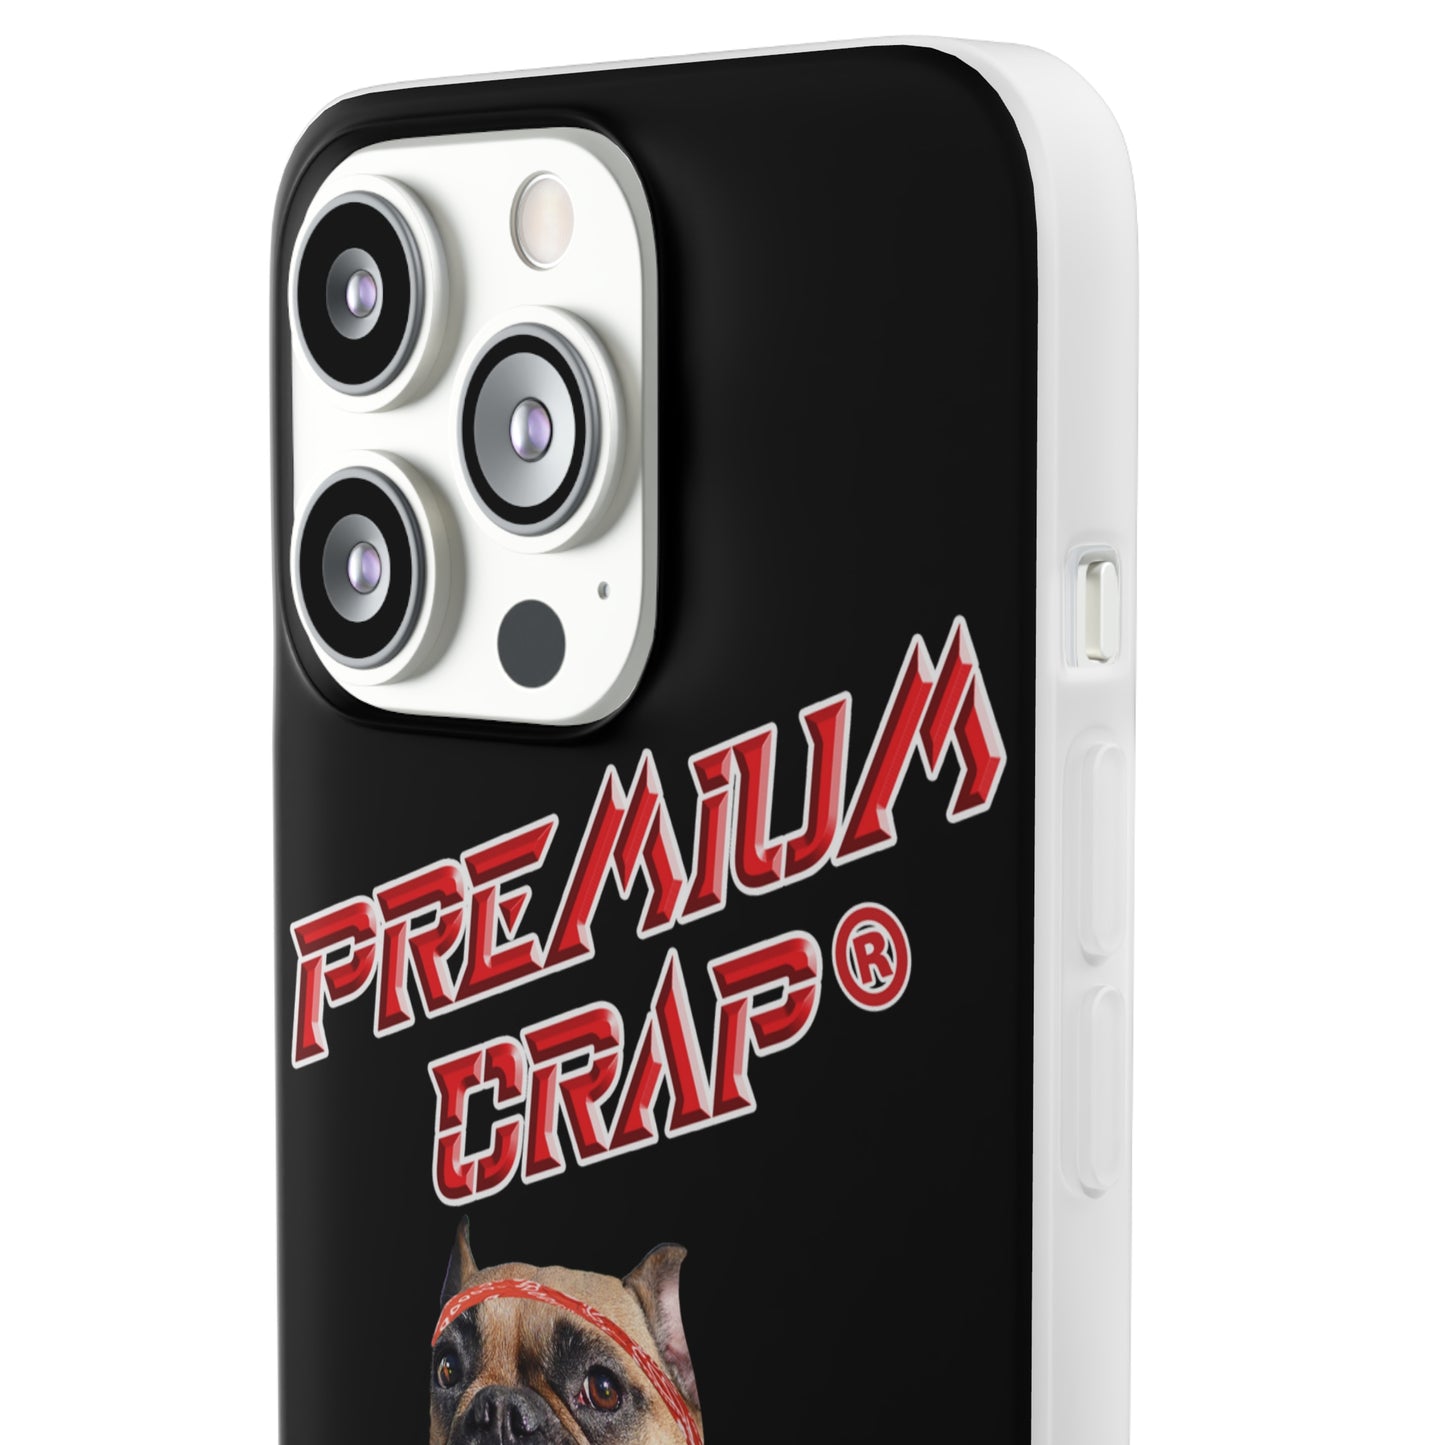 Premium Crap II Flexi Phone Cases